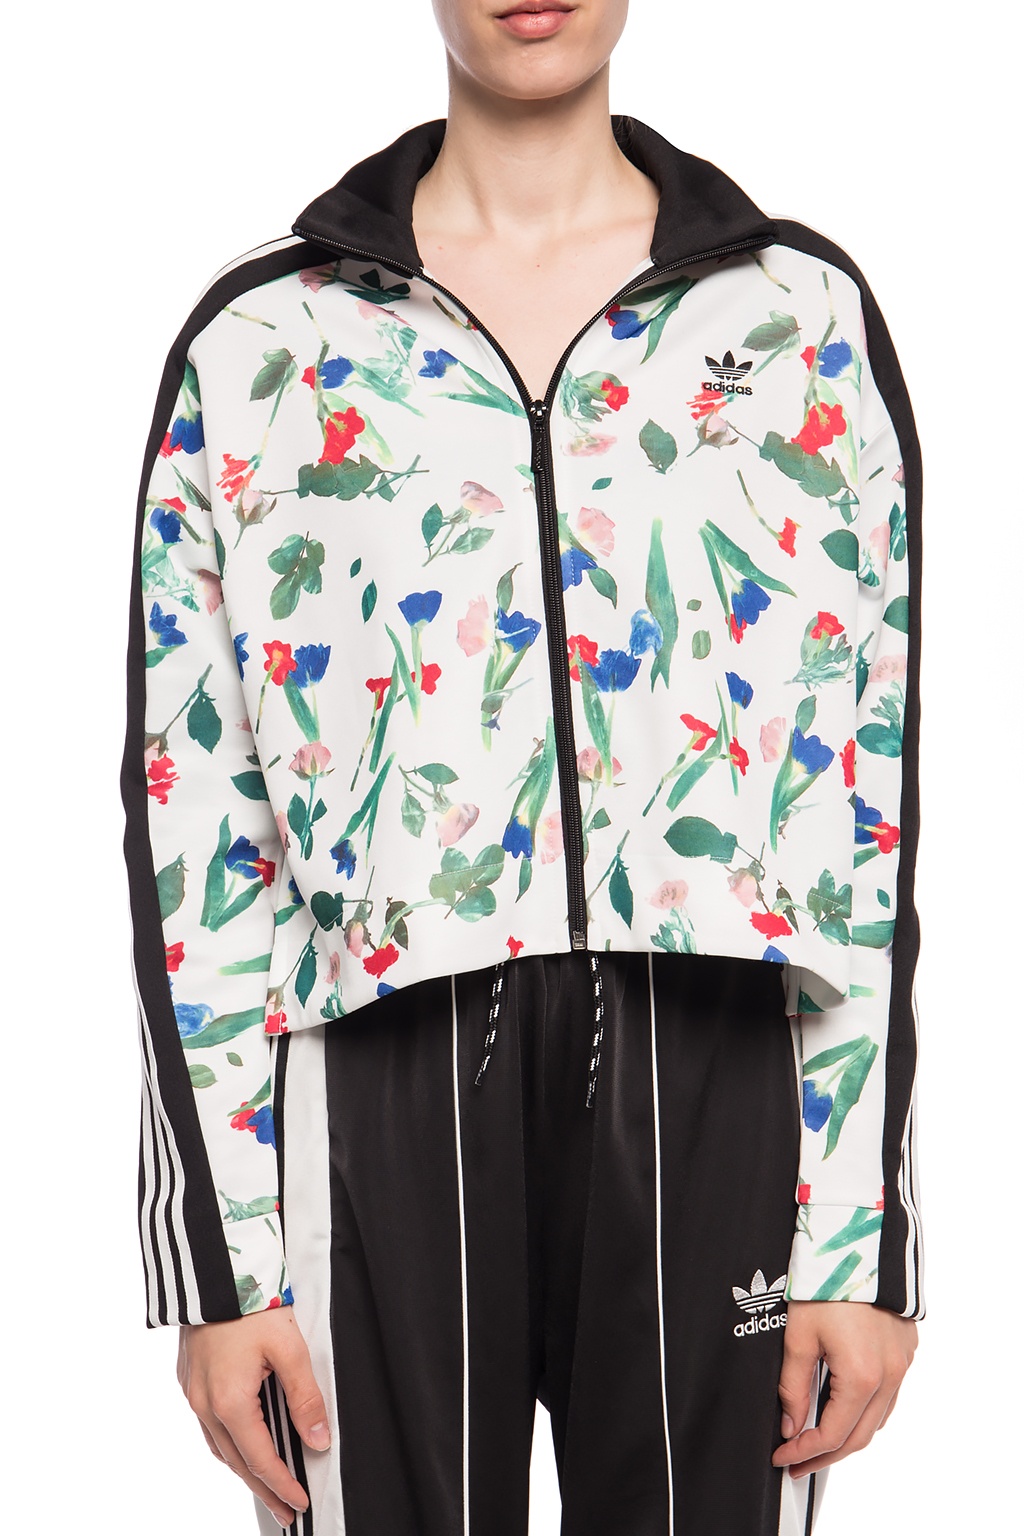 adidas floral jacket and shorts